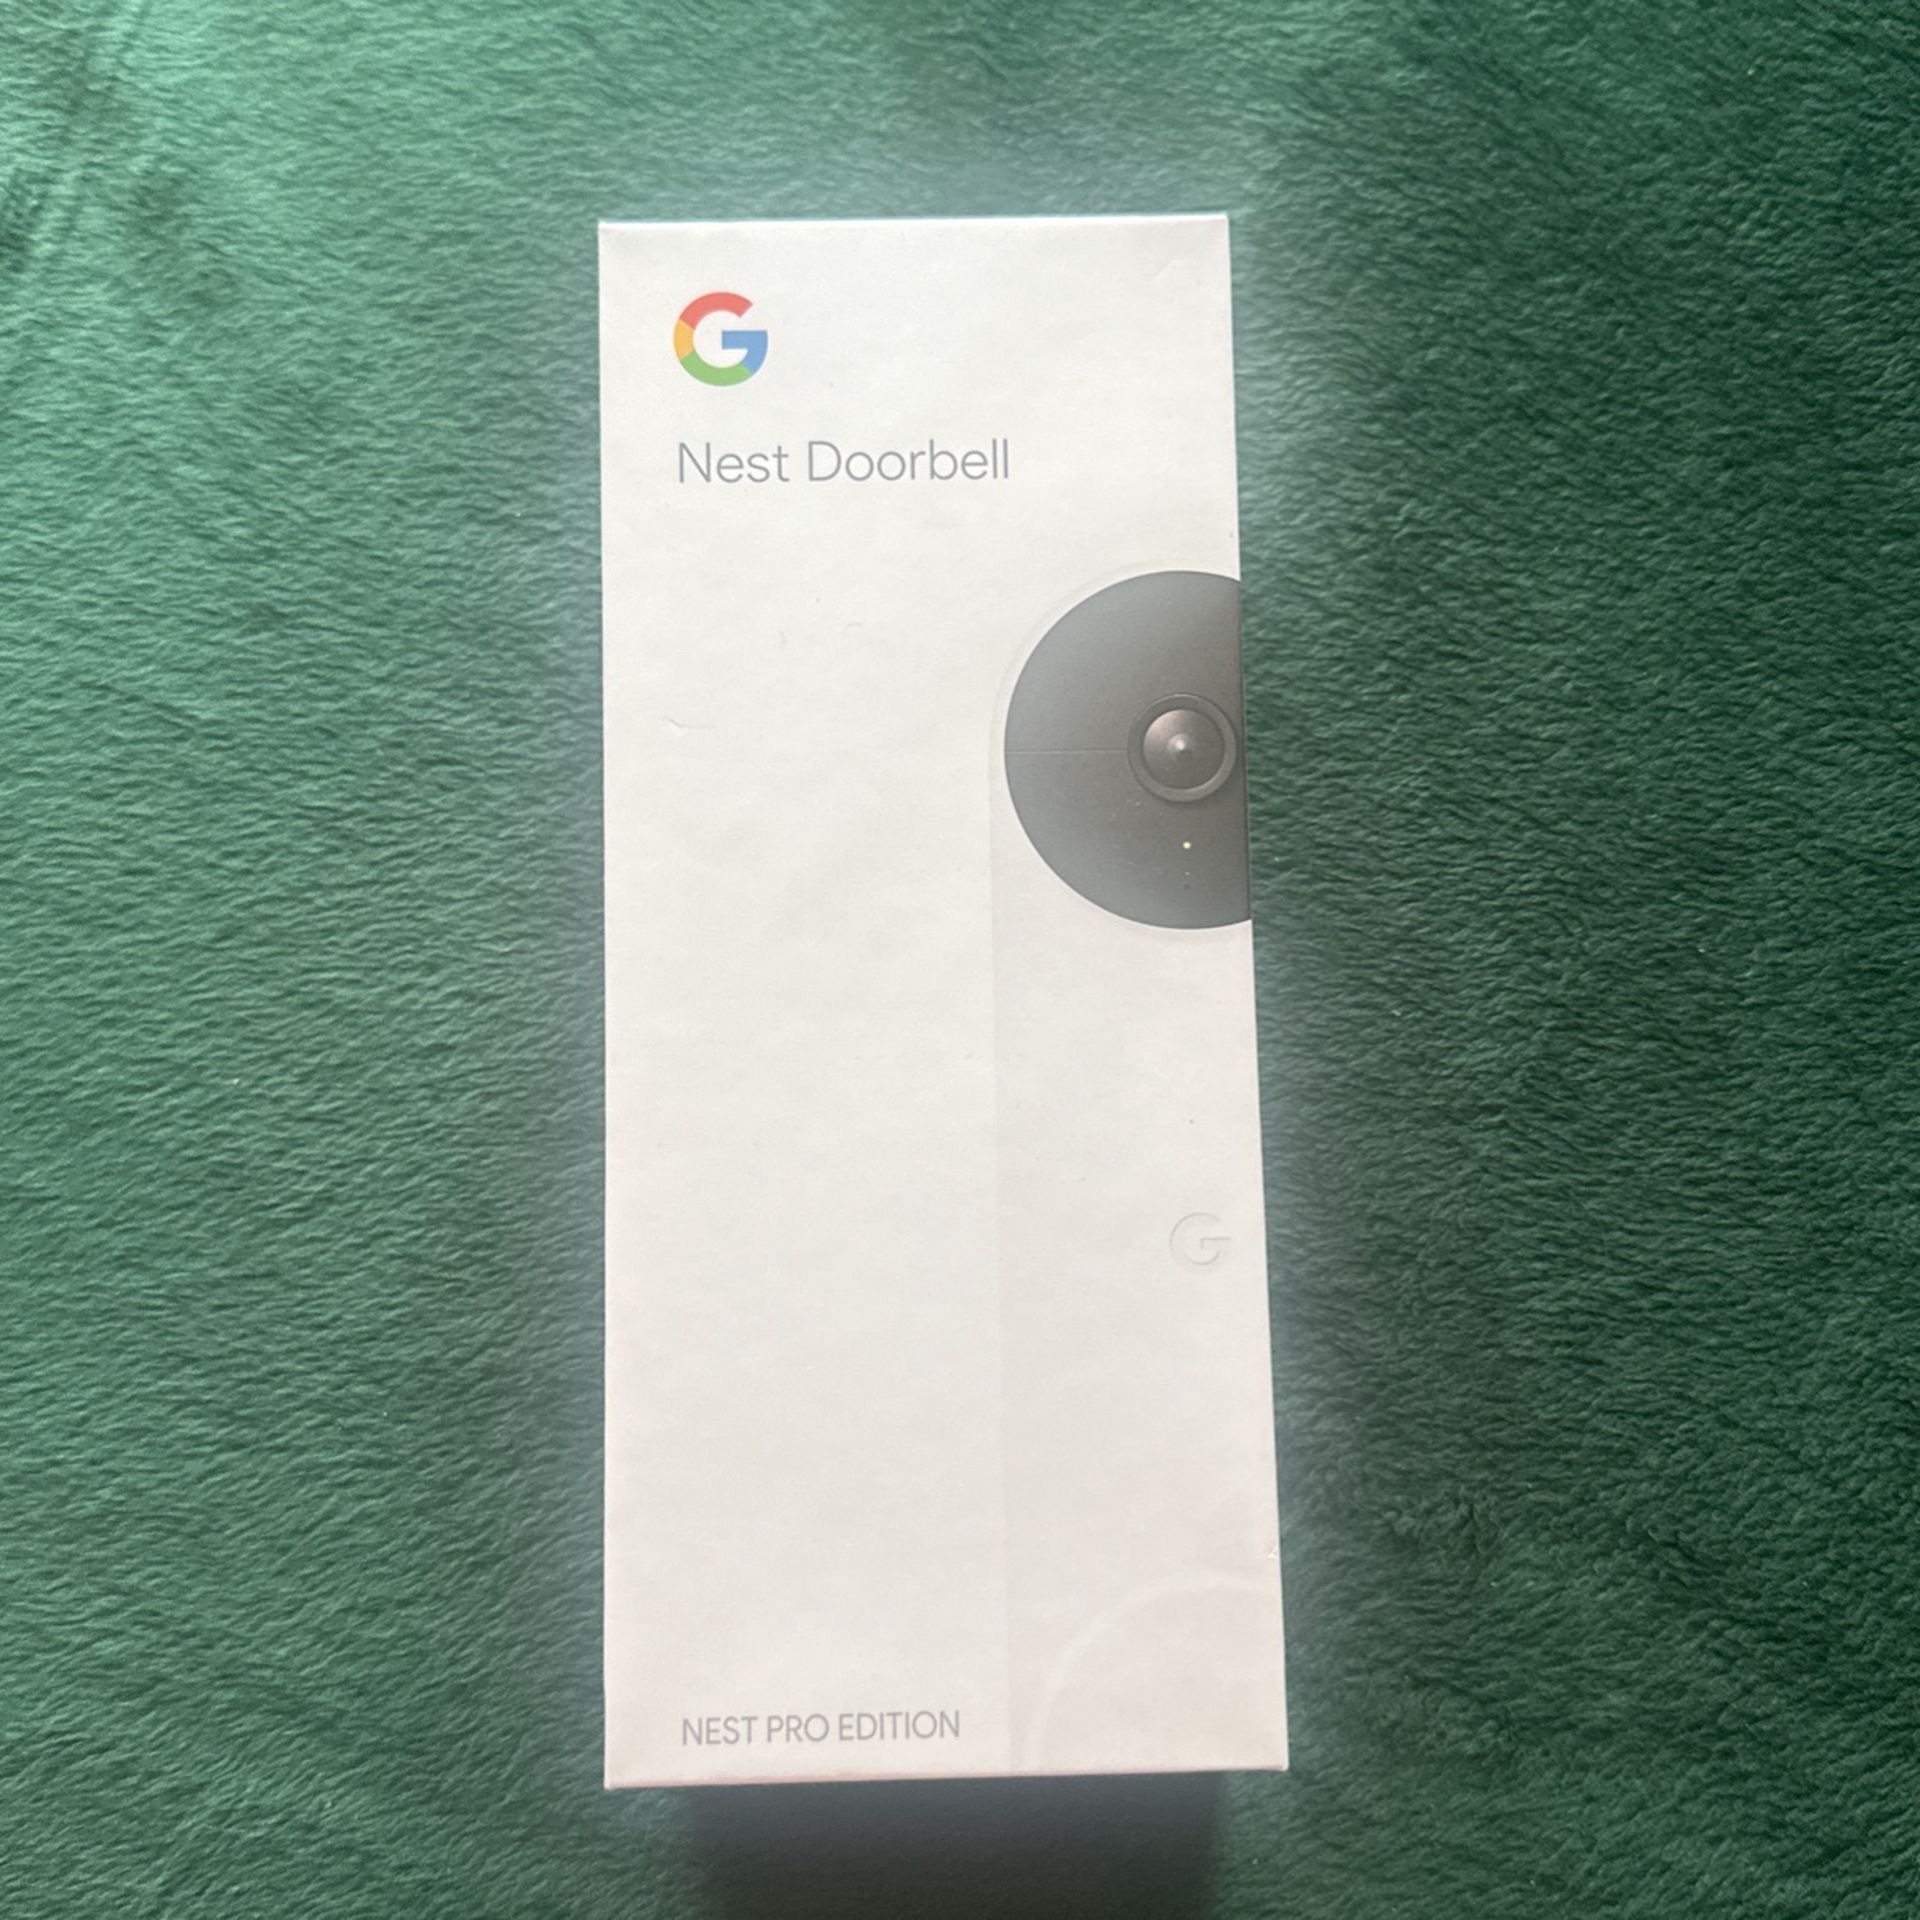 New Google Nest Doorbell